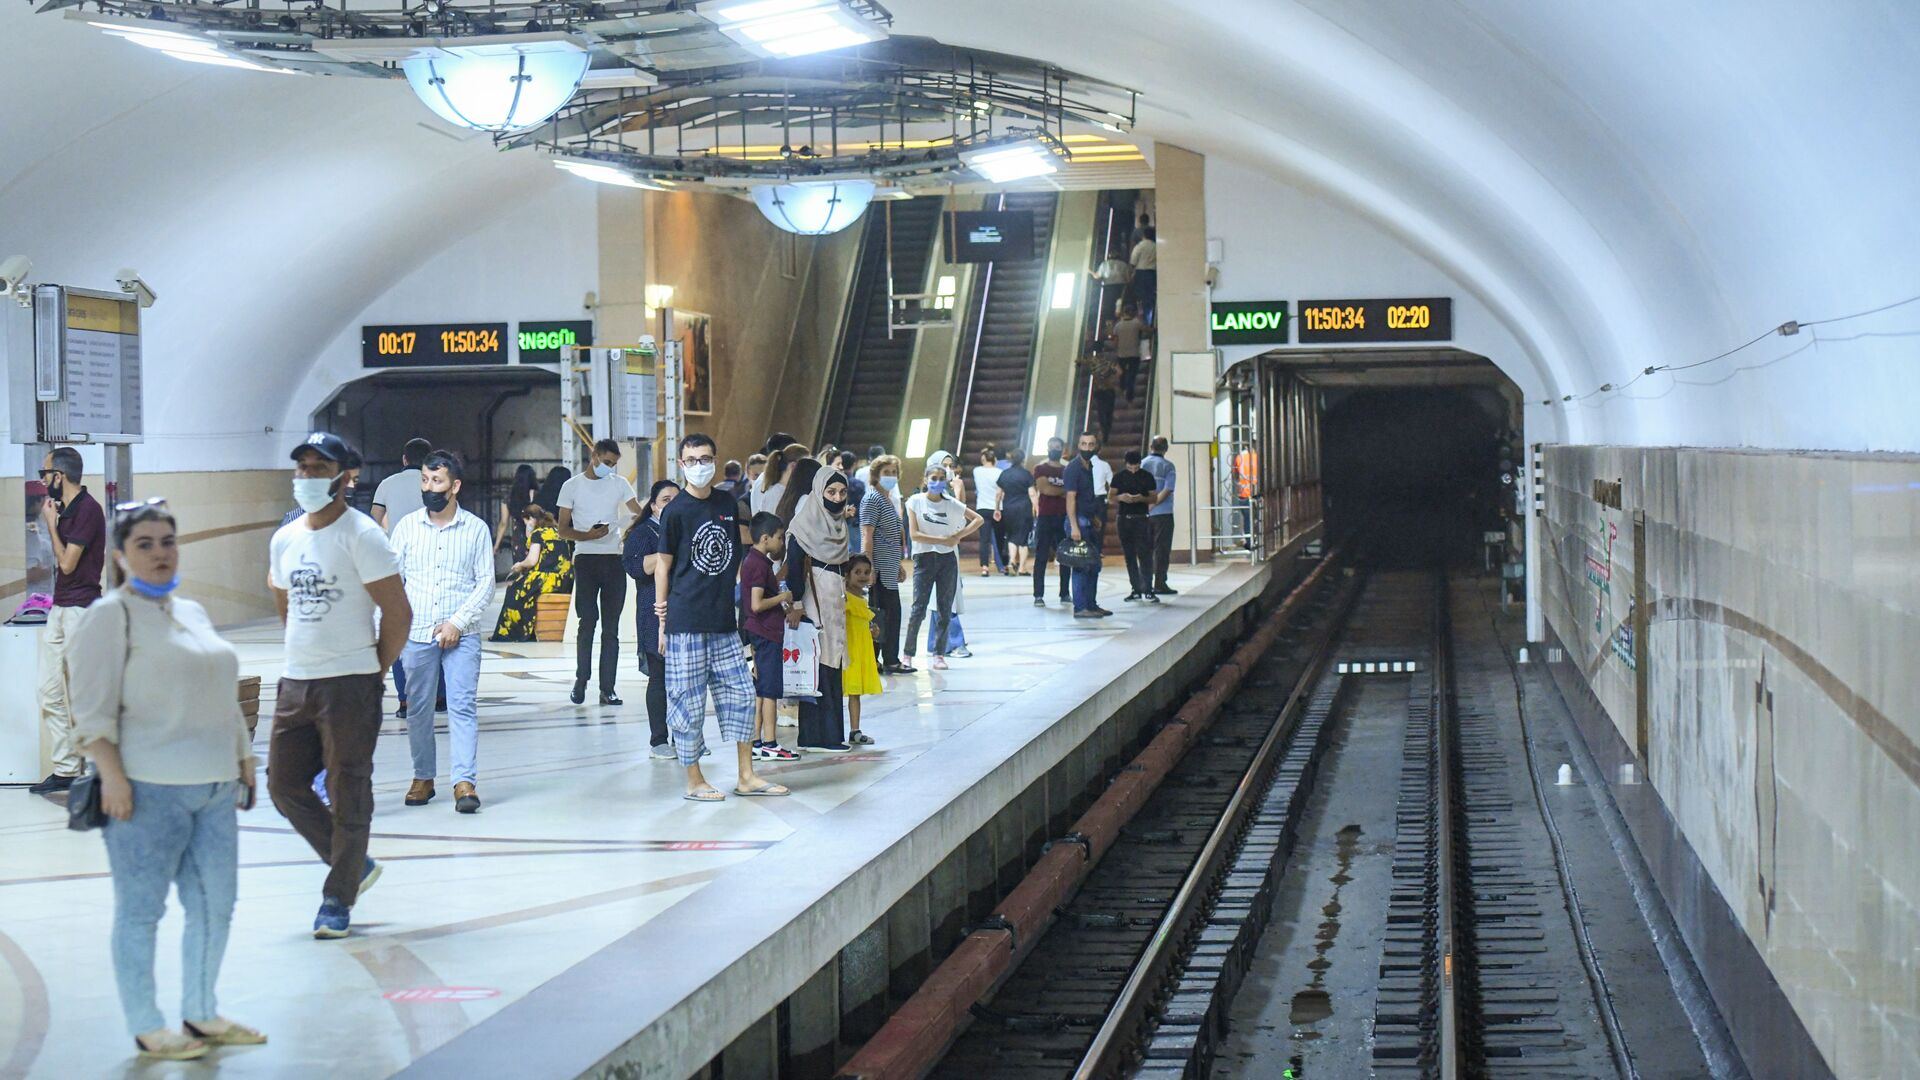 Завтра одна из станций бакинского метро будет работать в усиленном режиме